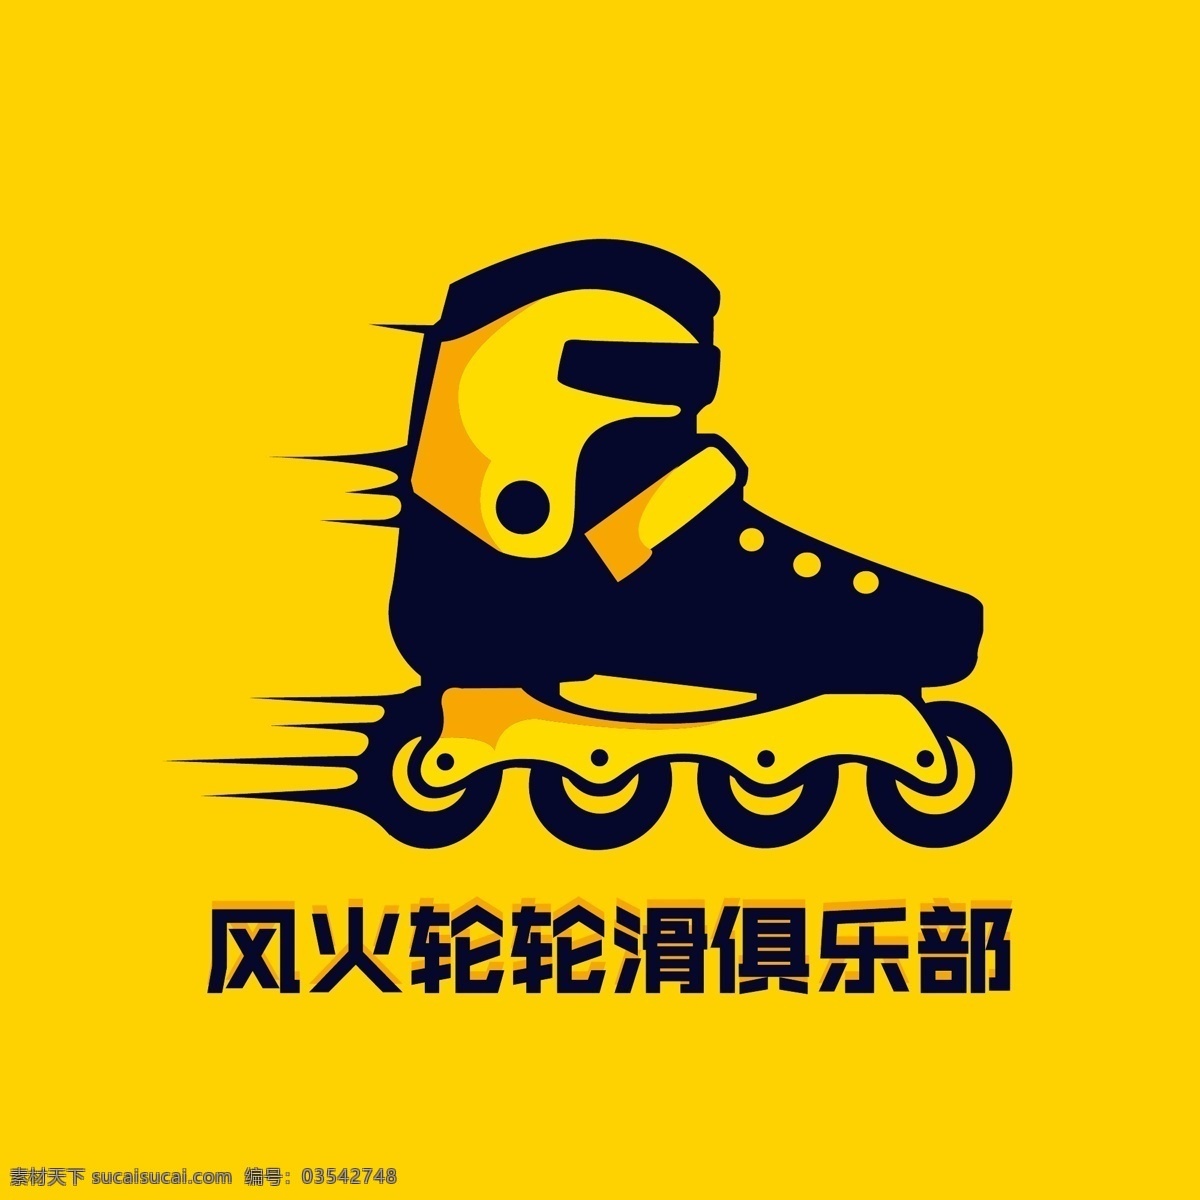 风火轮 滑轮 俱乐部 滑轮鞋 卡通 矢量 logo 培训 矢量卡通 logo设计